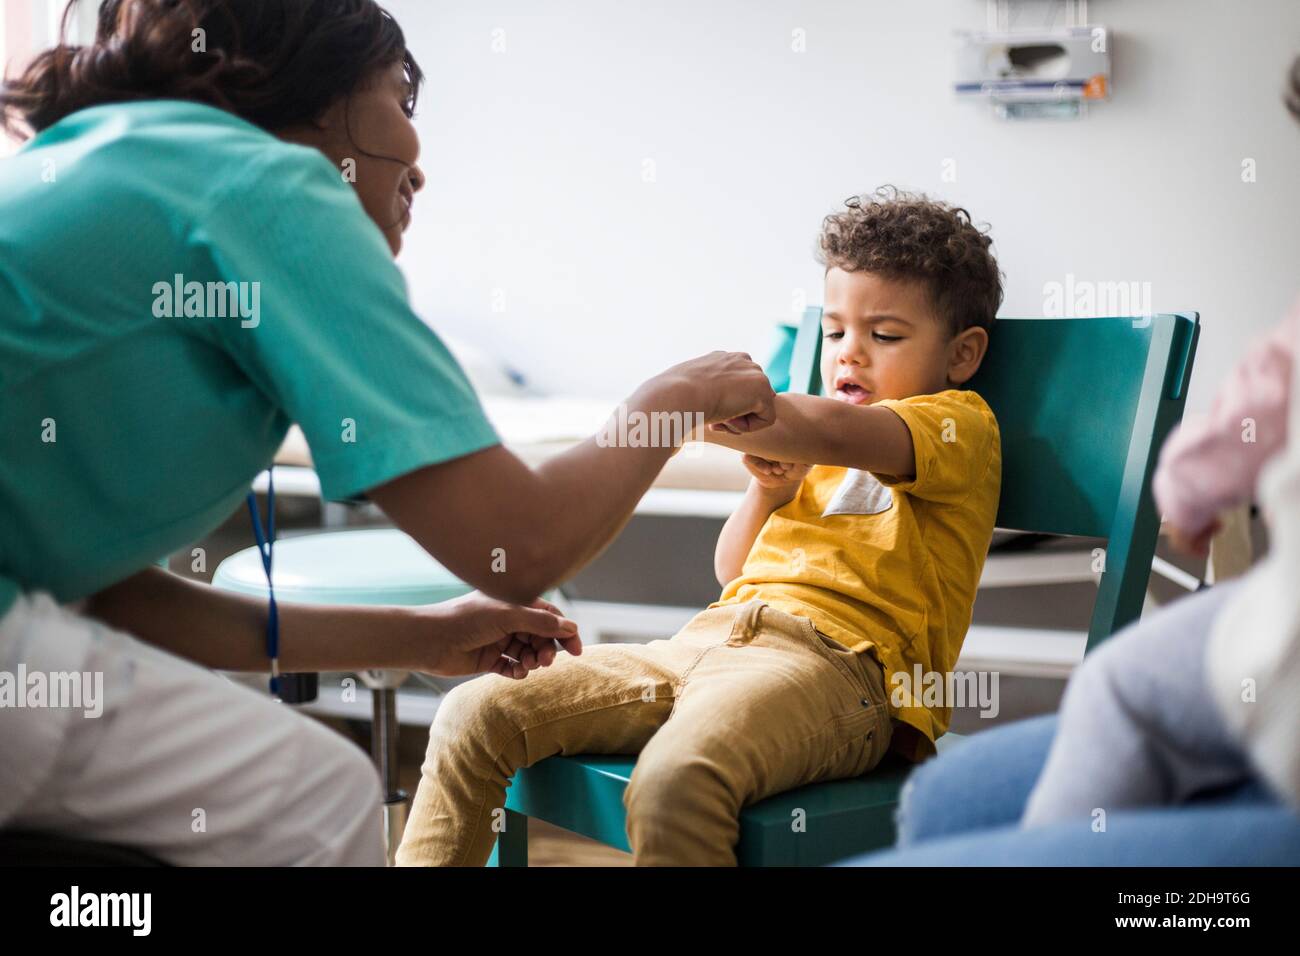 Ärztin zeigt auf den Arm des Jungen im Krankenhaus Stockfoto